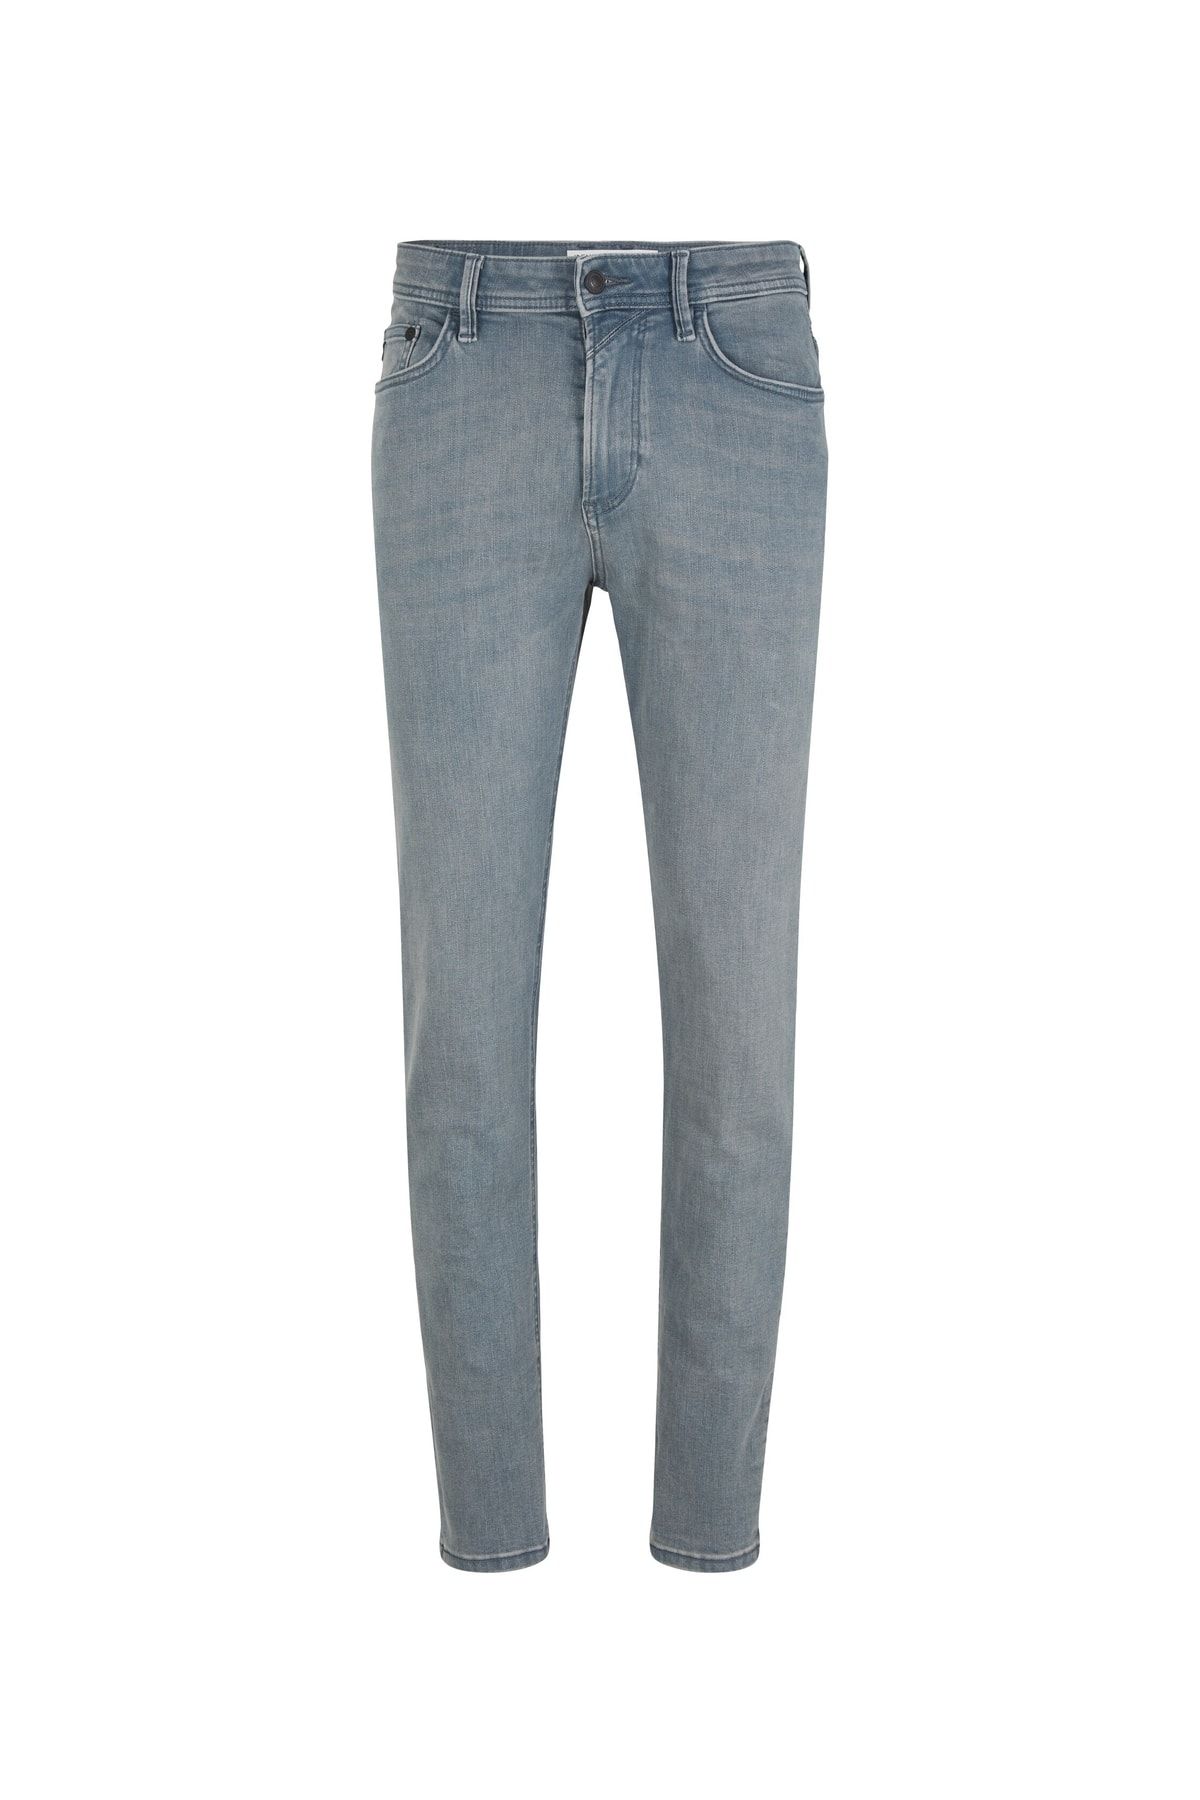 Tom Tailor Denim Jeans - Blue - Straight - Trendyol